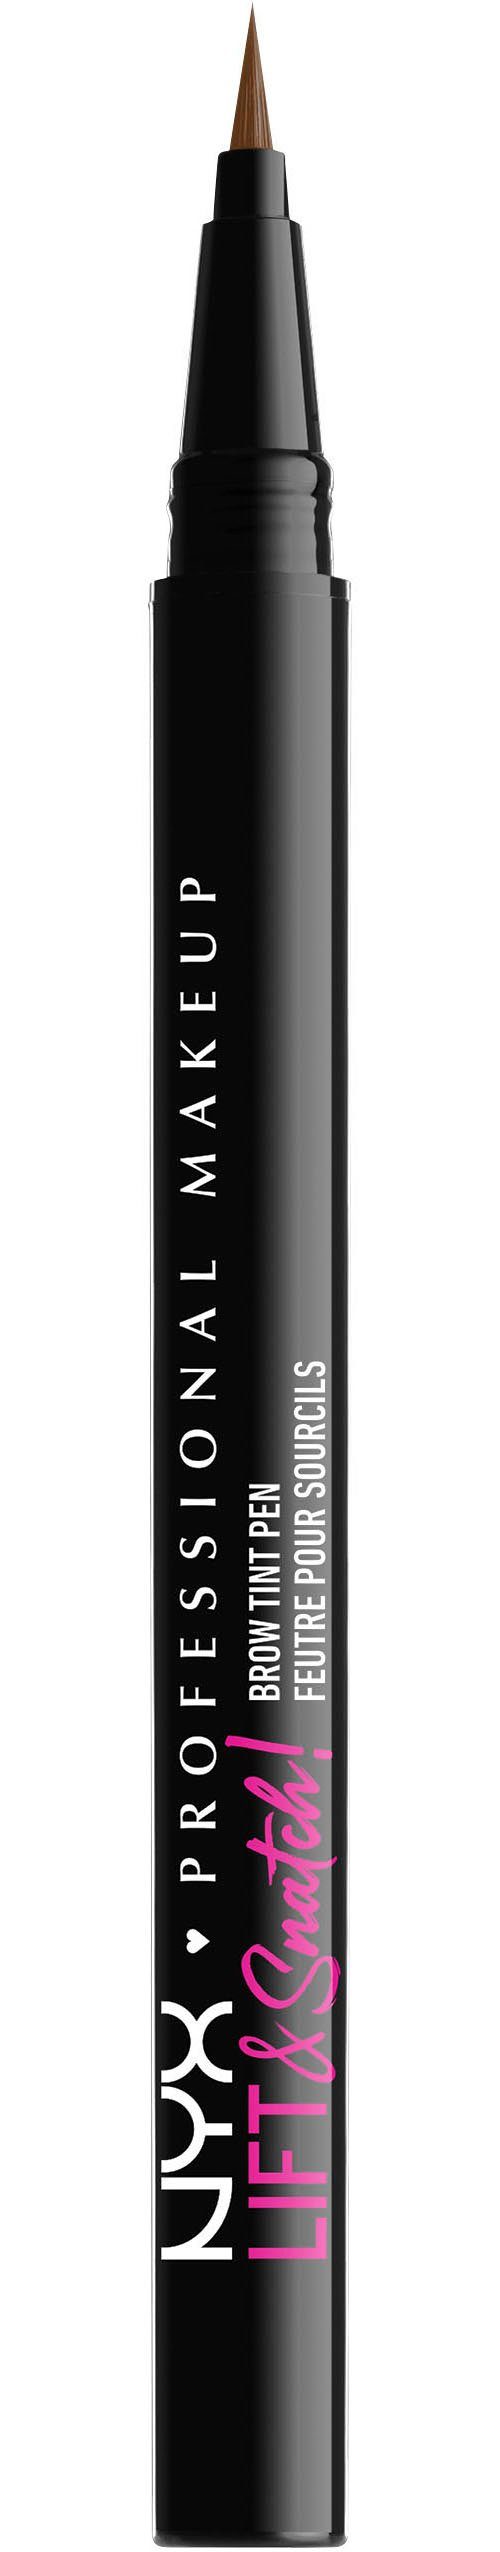 NYX Augenbrauen-Stift Professional Makeup Lift & Snatch Brow Tint Pen caramel | Augenbrauen